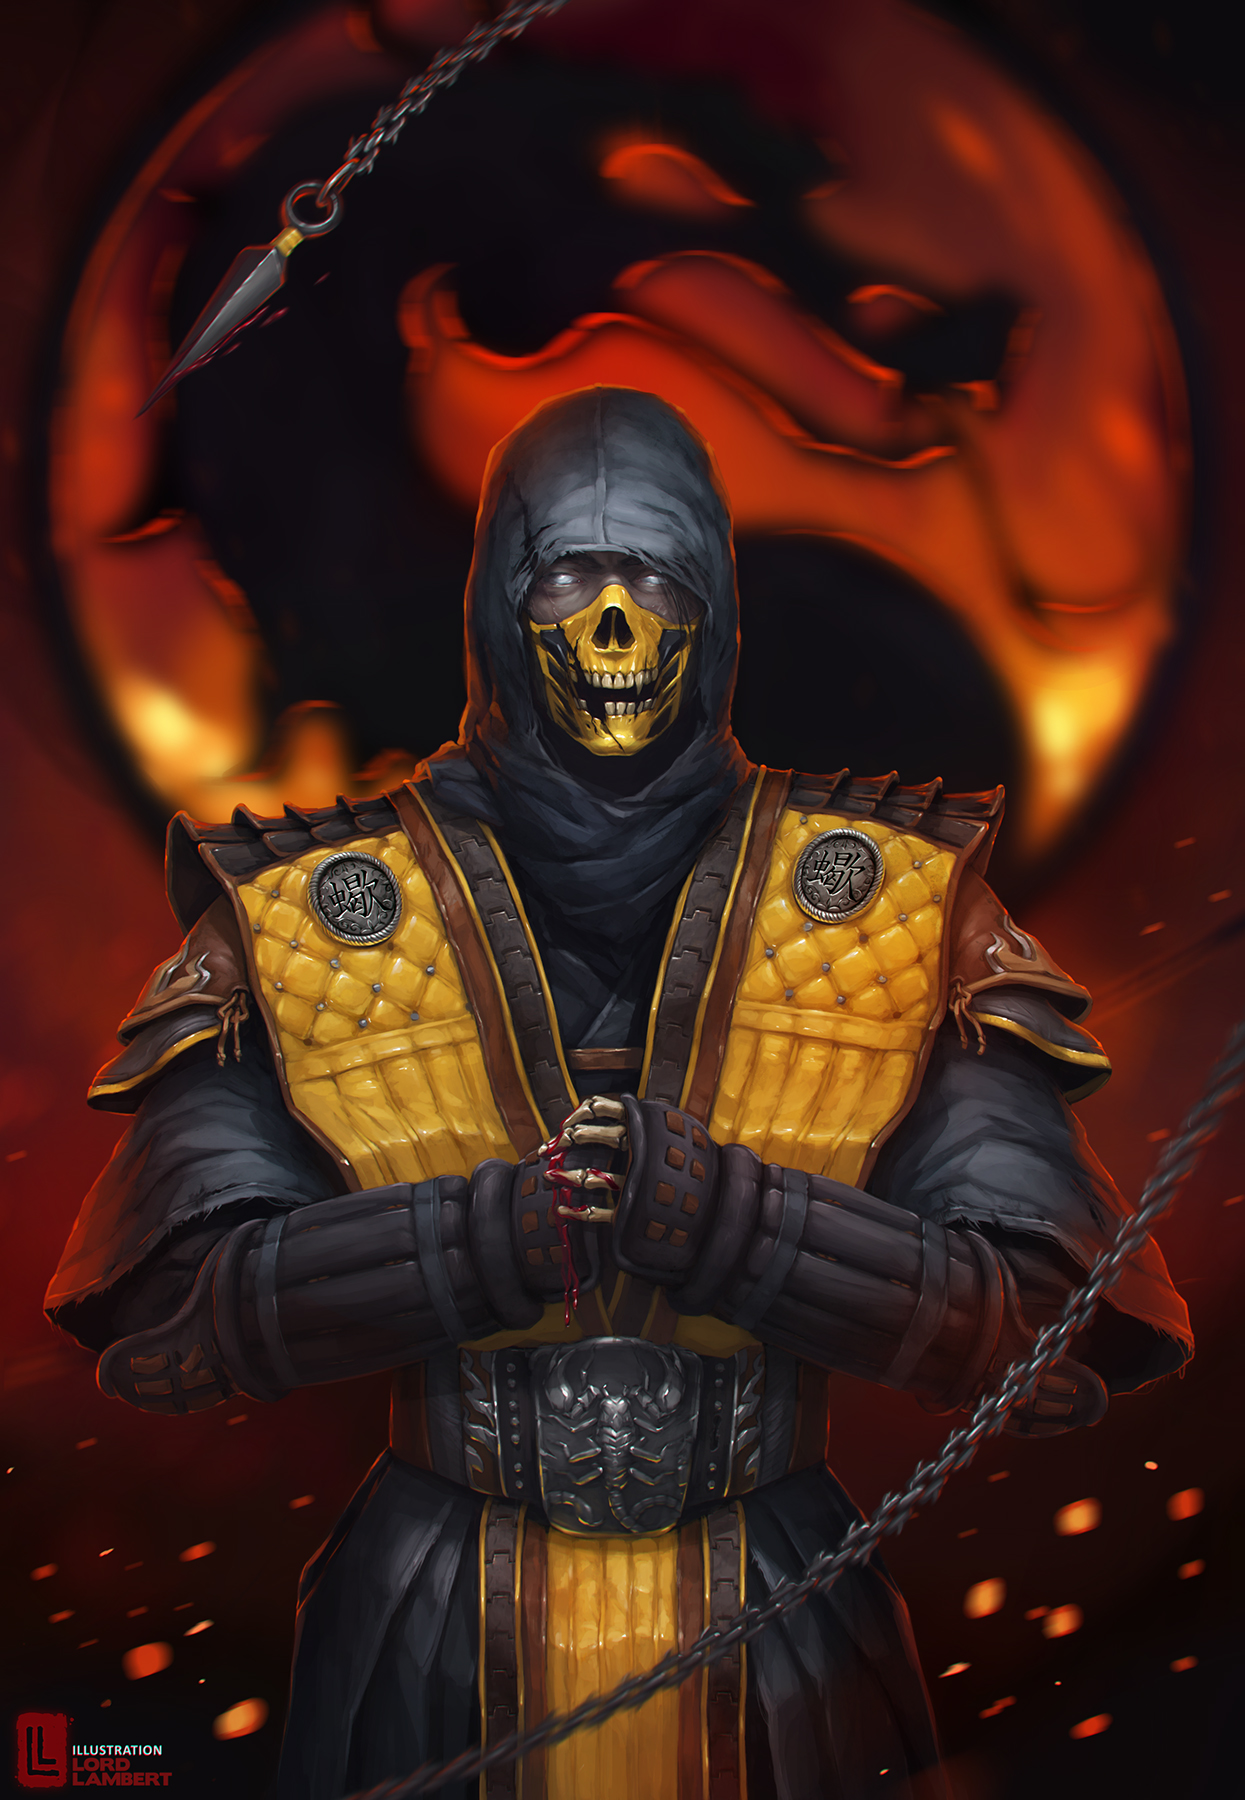 [OC fanart] Mortal Kombat - Rose 01 by Deydranos on DeviantArt